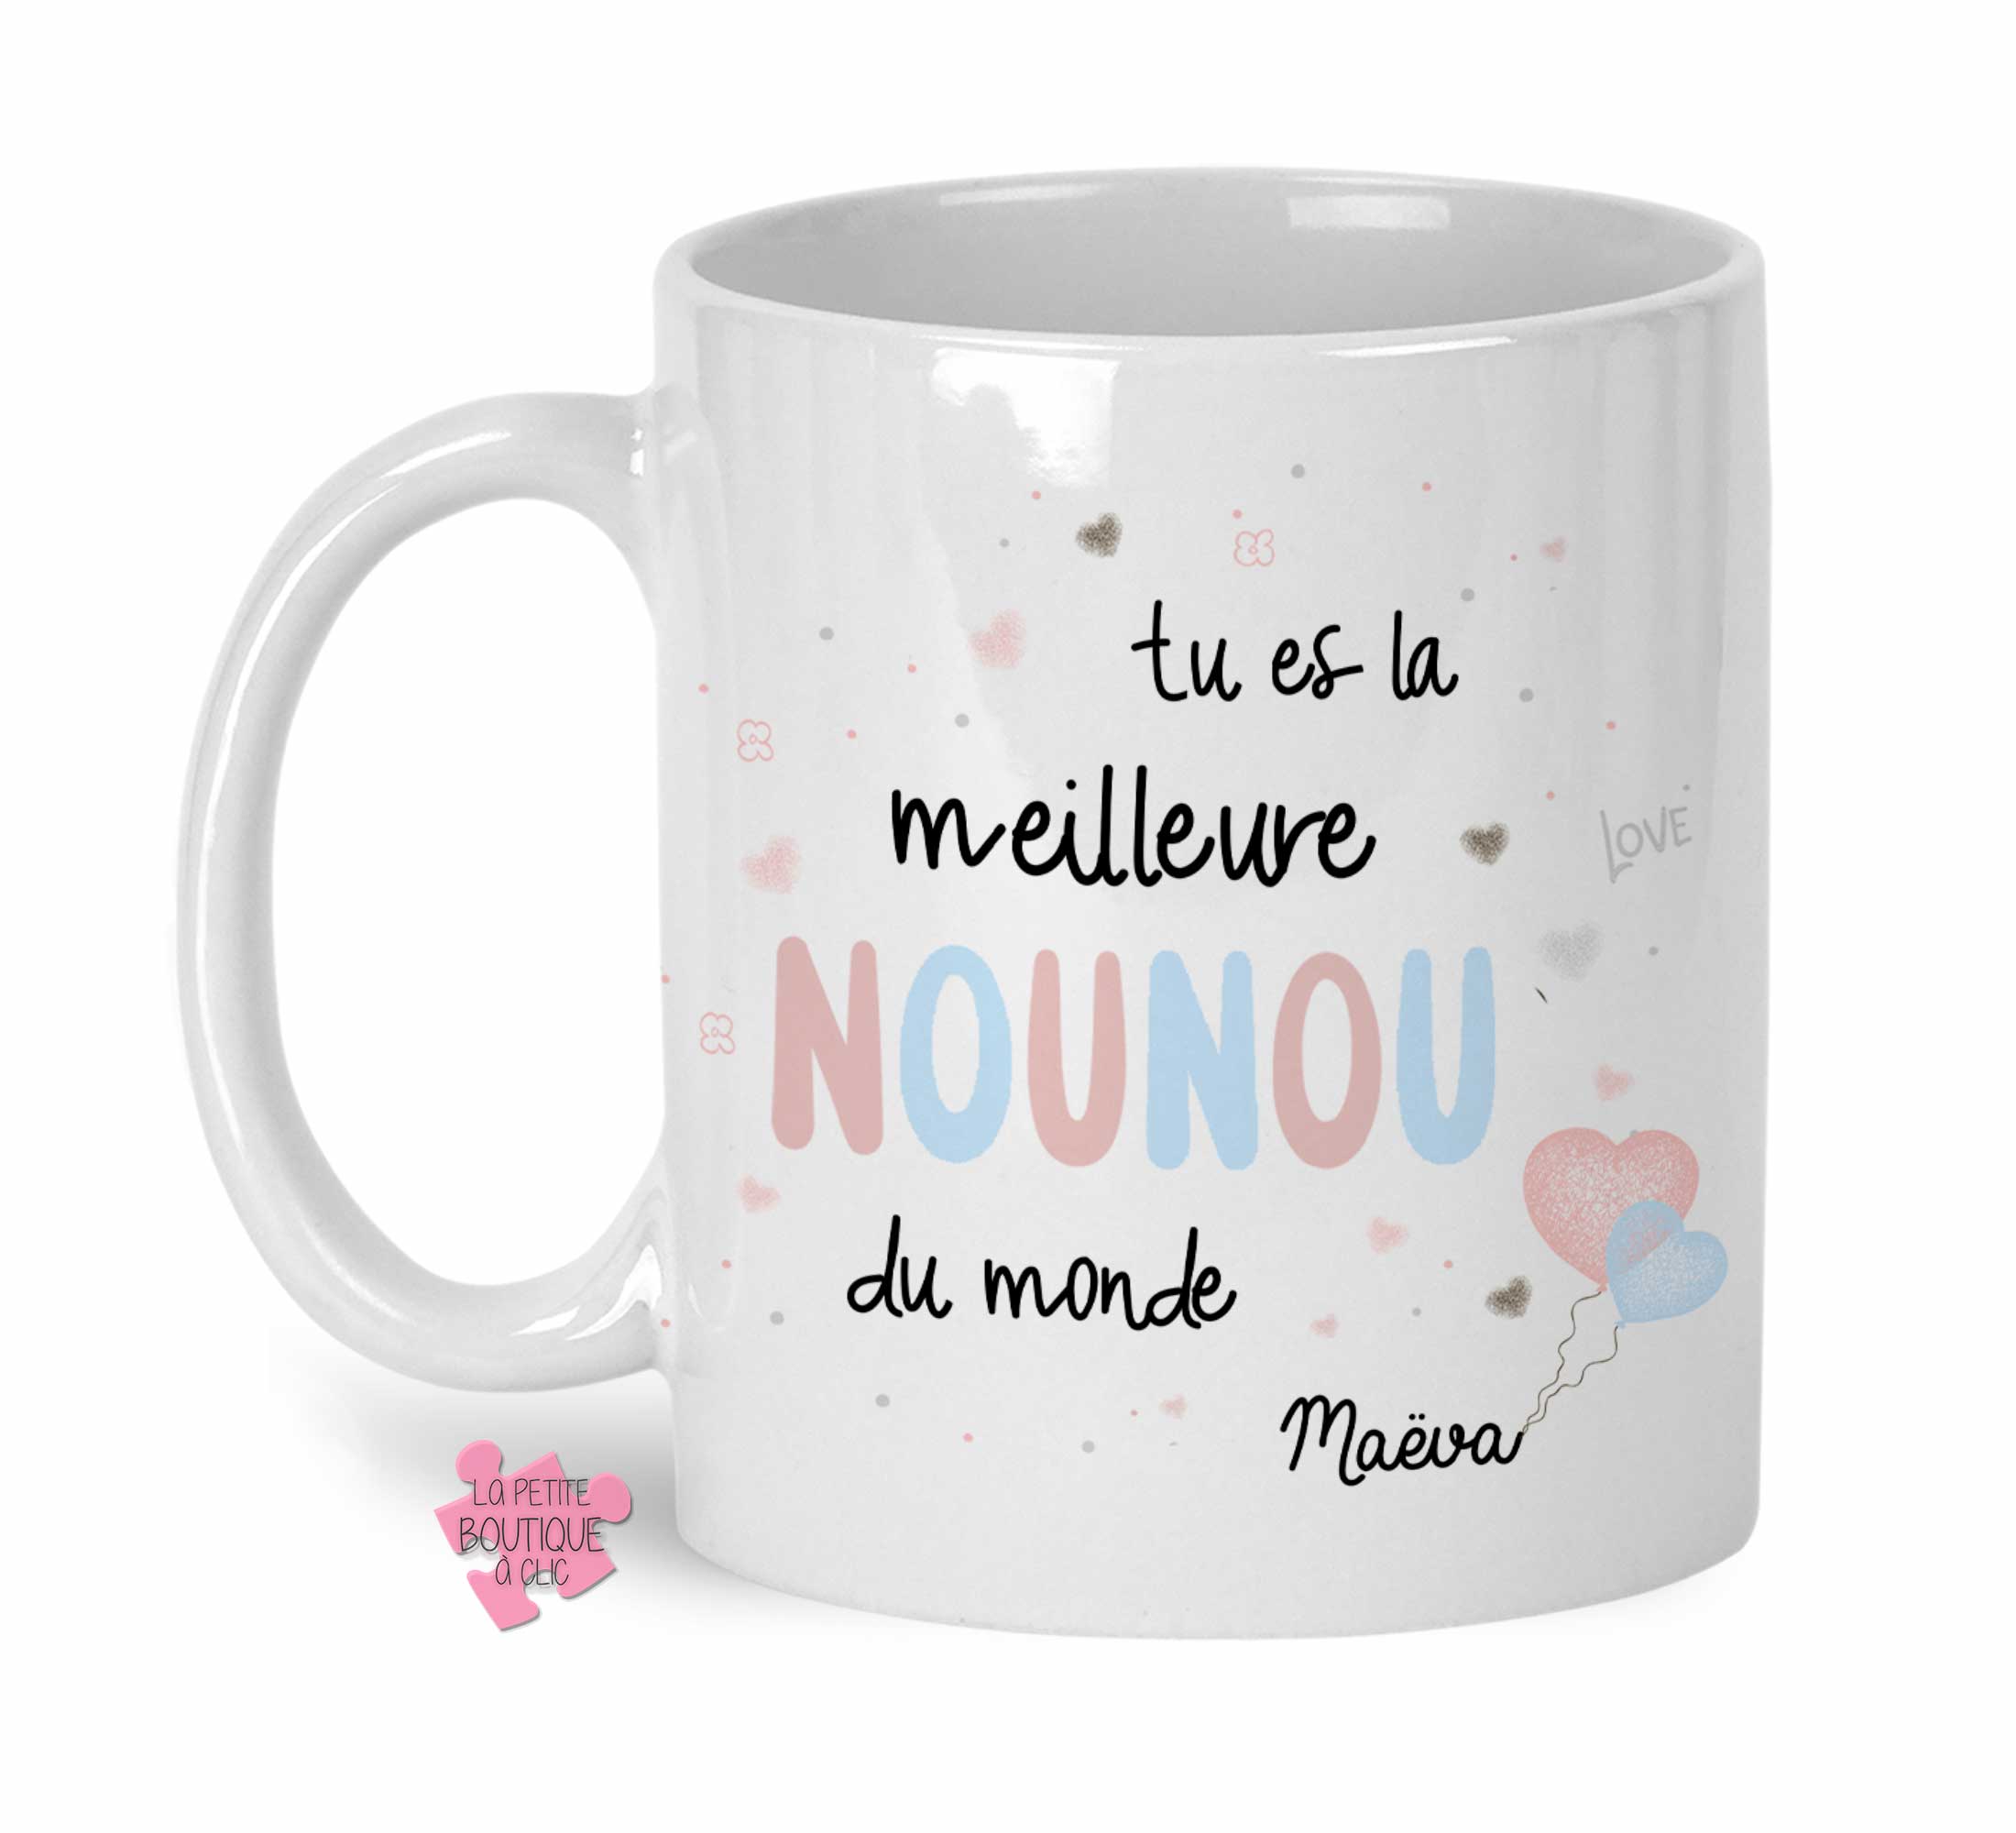 Mug Nounou personnalisable - La petite boutique à Clic